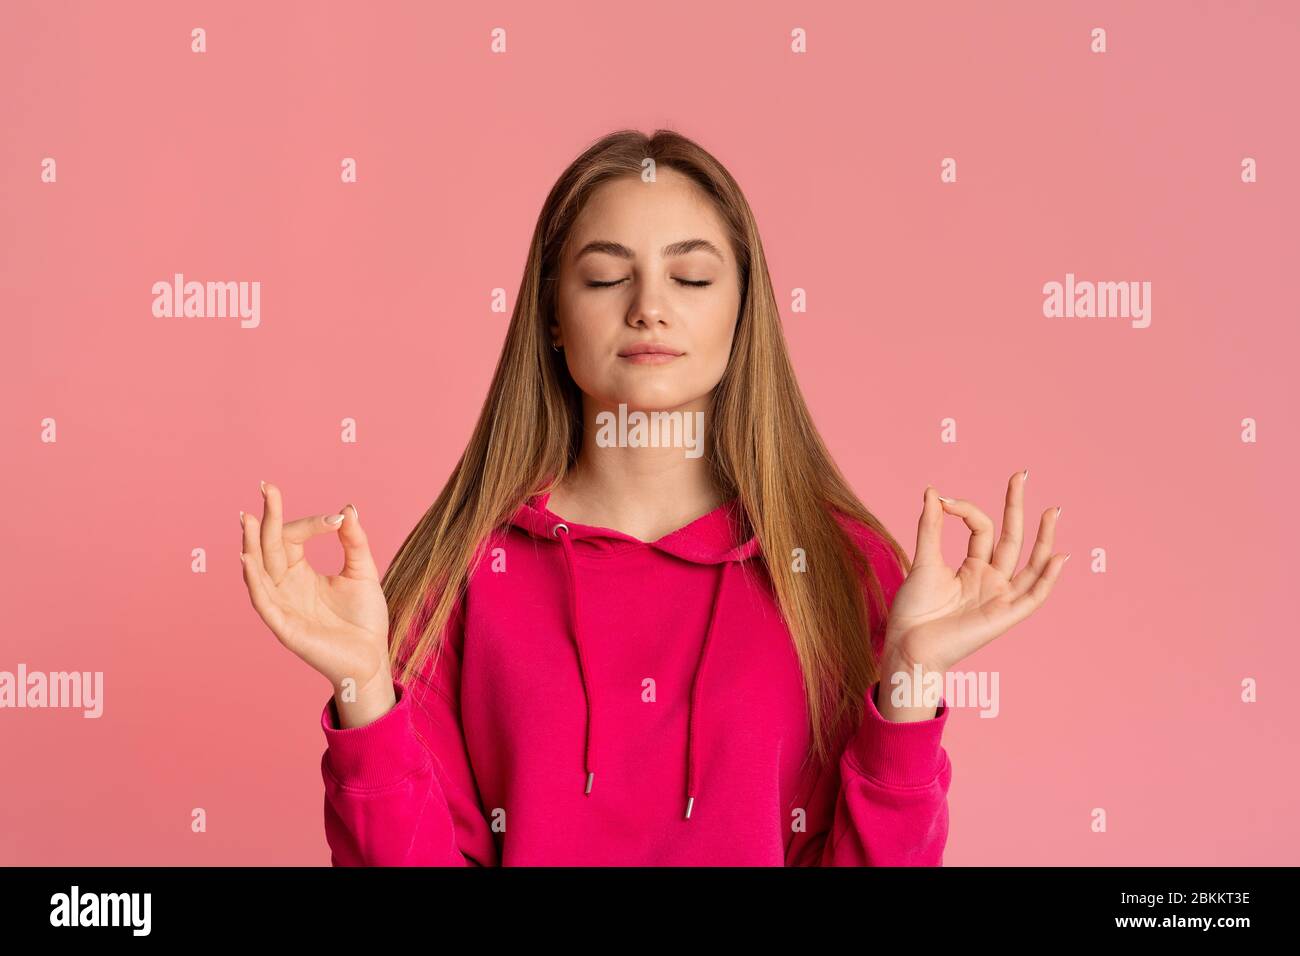 La adolescente medita con los ojos cerrados, el espacio vacío Foto de stock